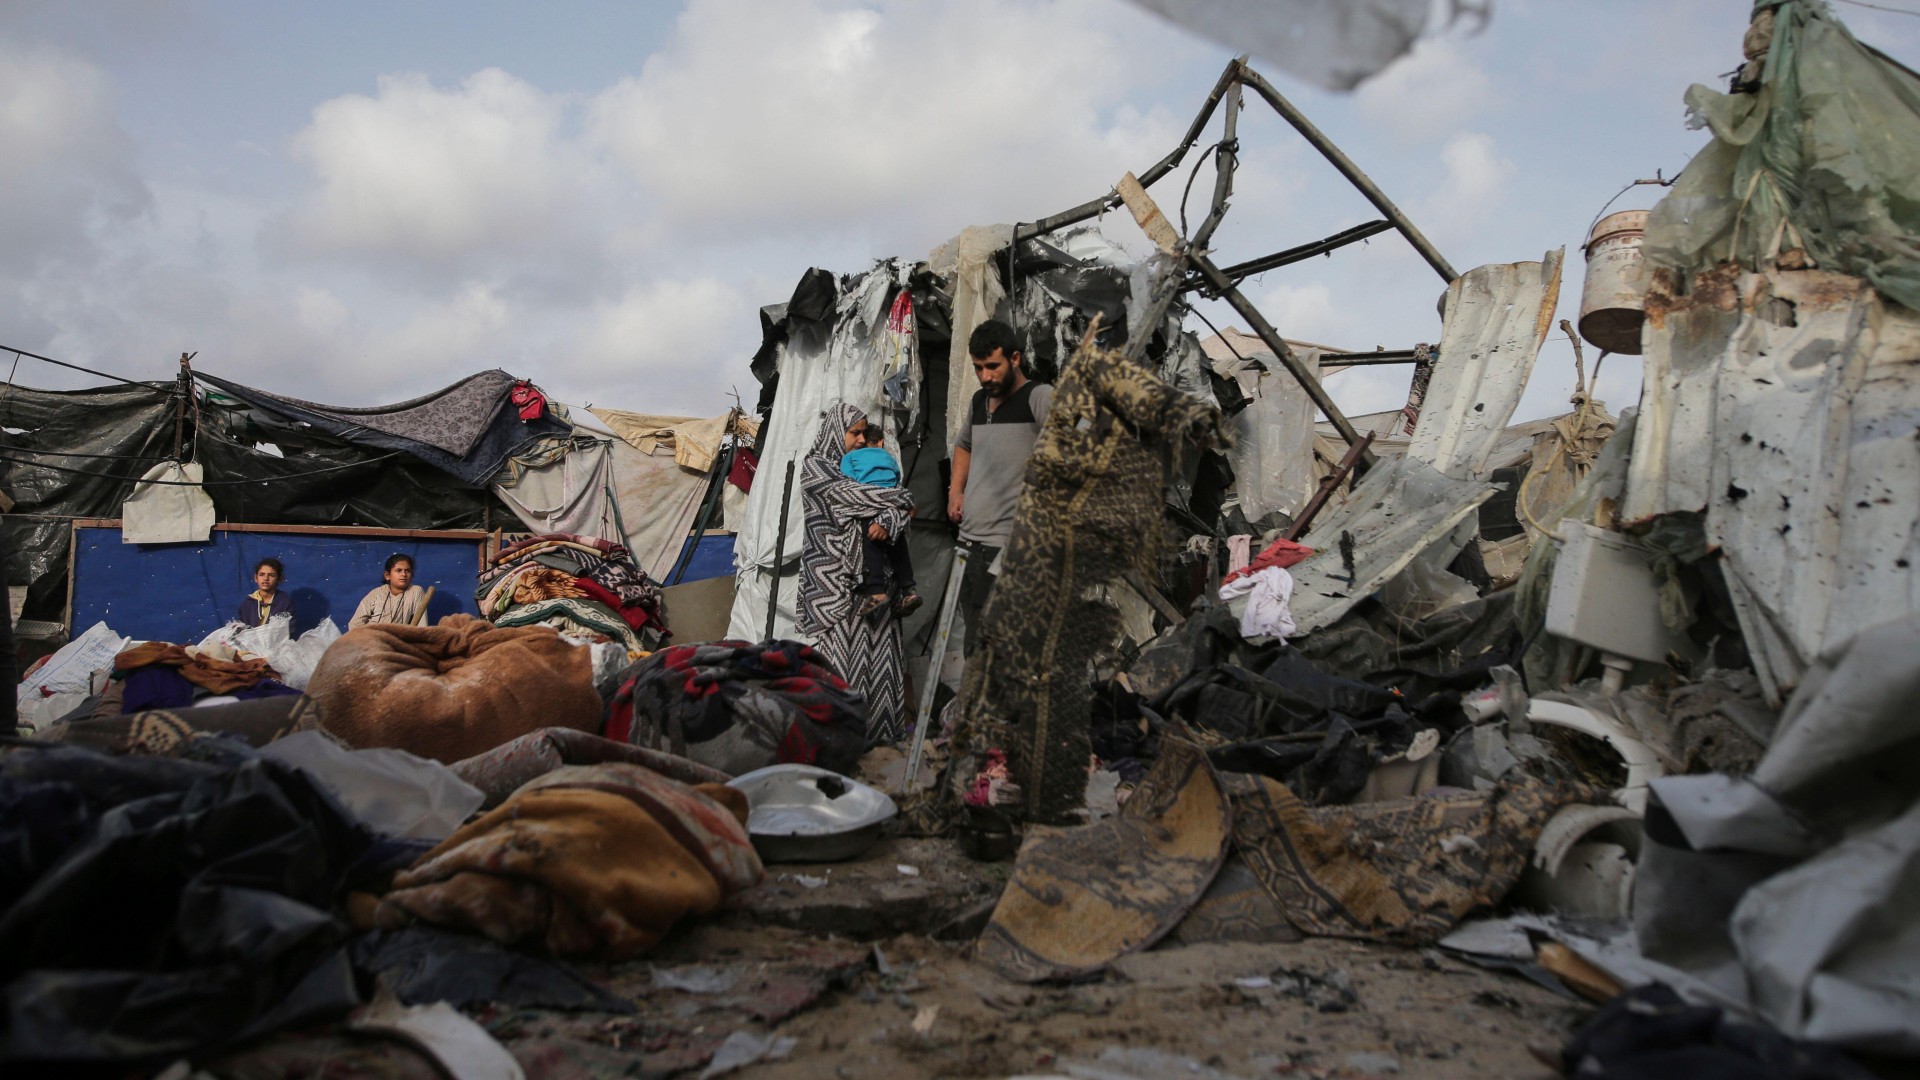 Rafah strikes: Has Israel crossed Western red lines in Gaza?